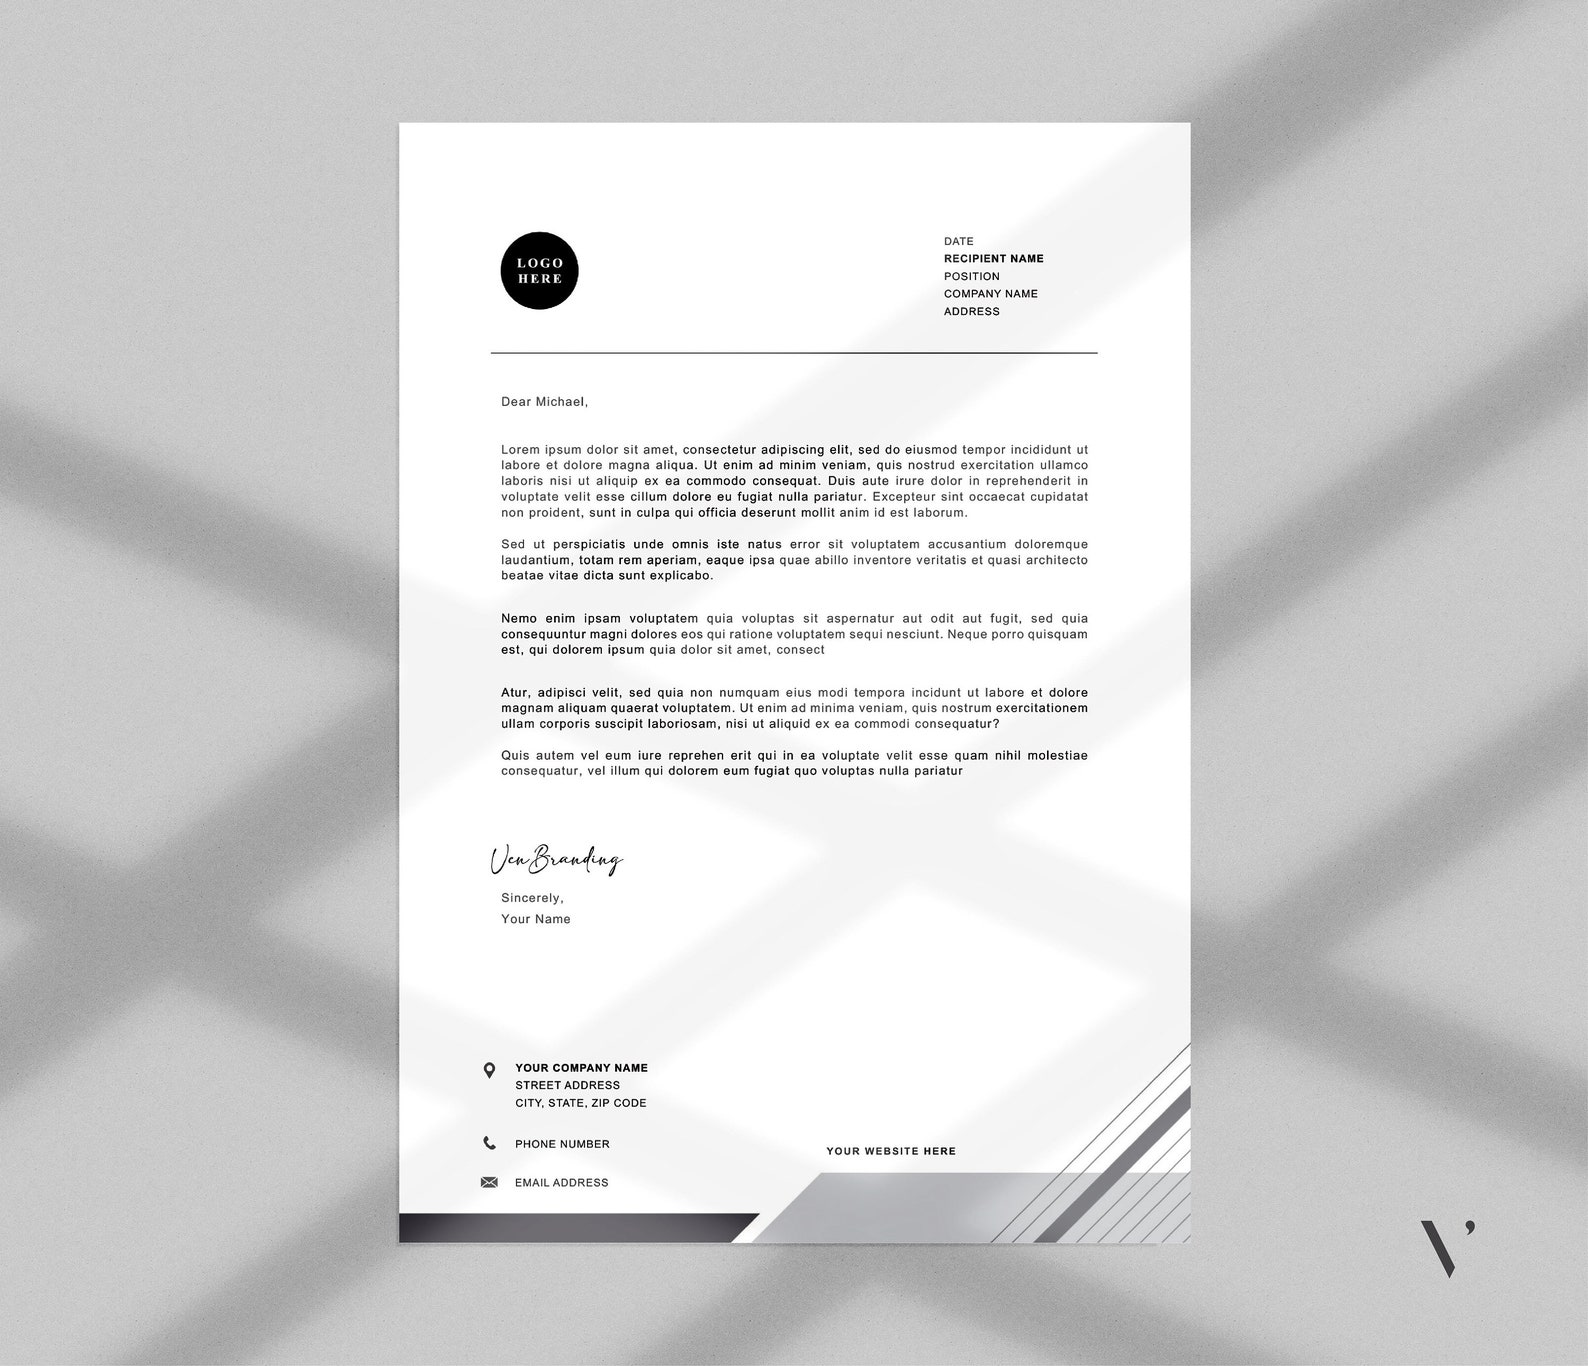 letterhead-template-word-editable-pdf-printable-business-letterhead